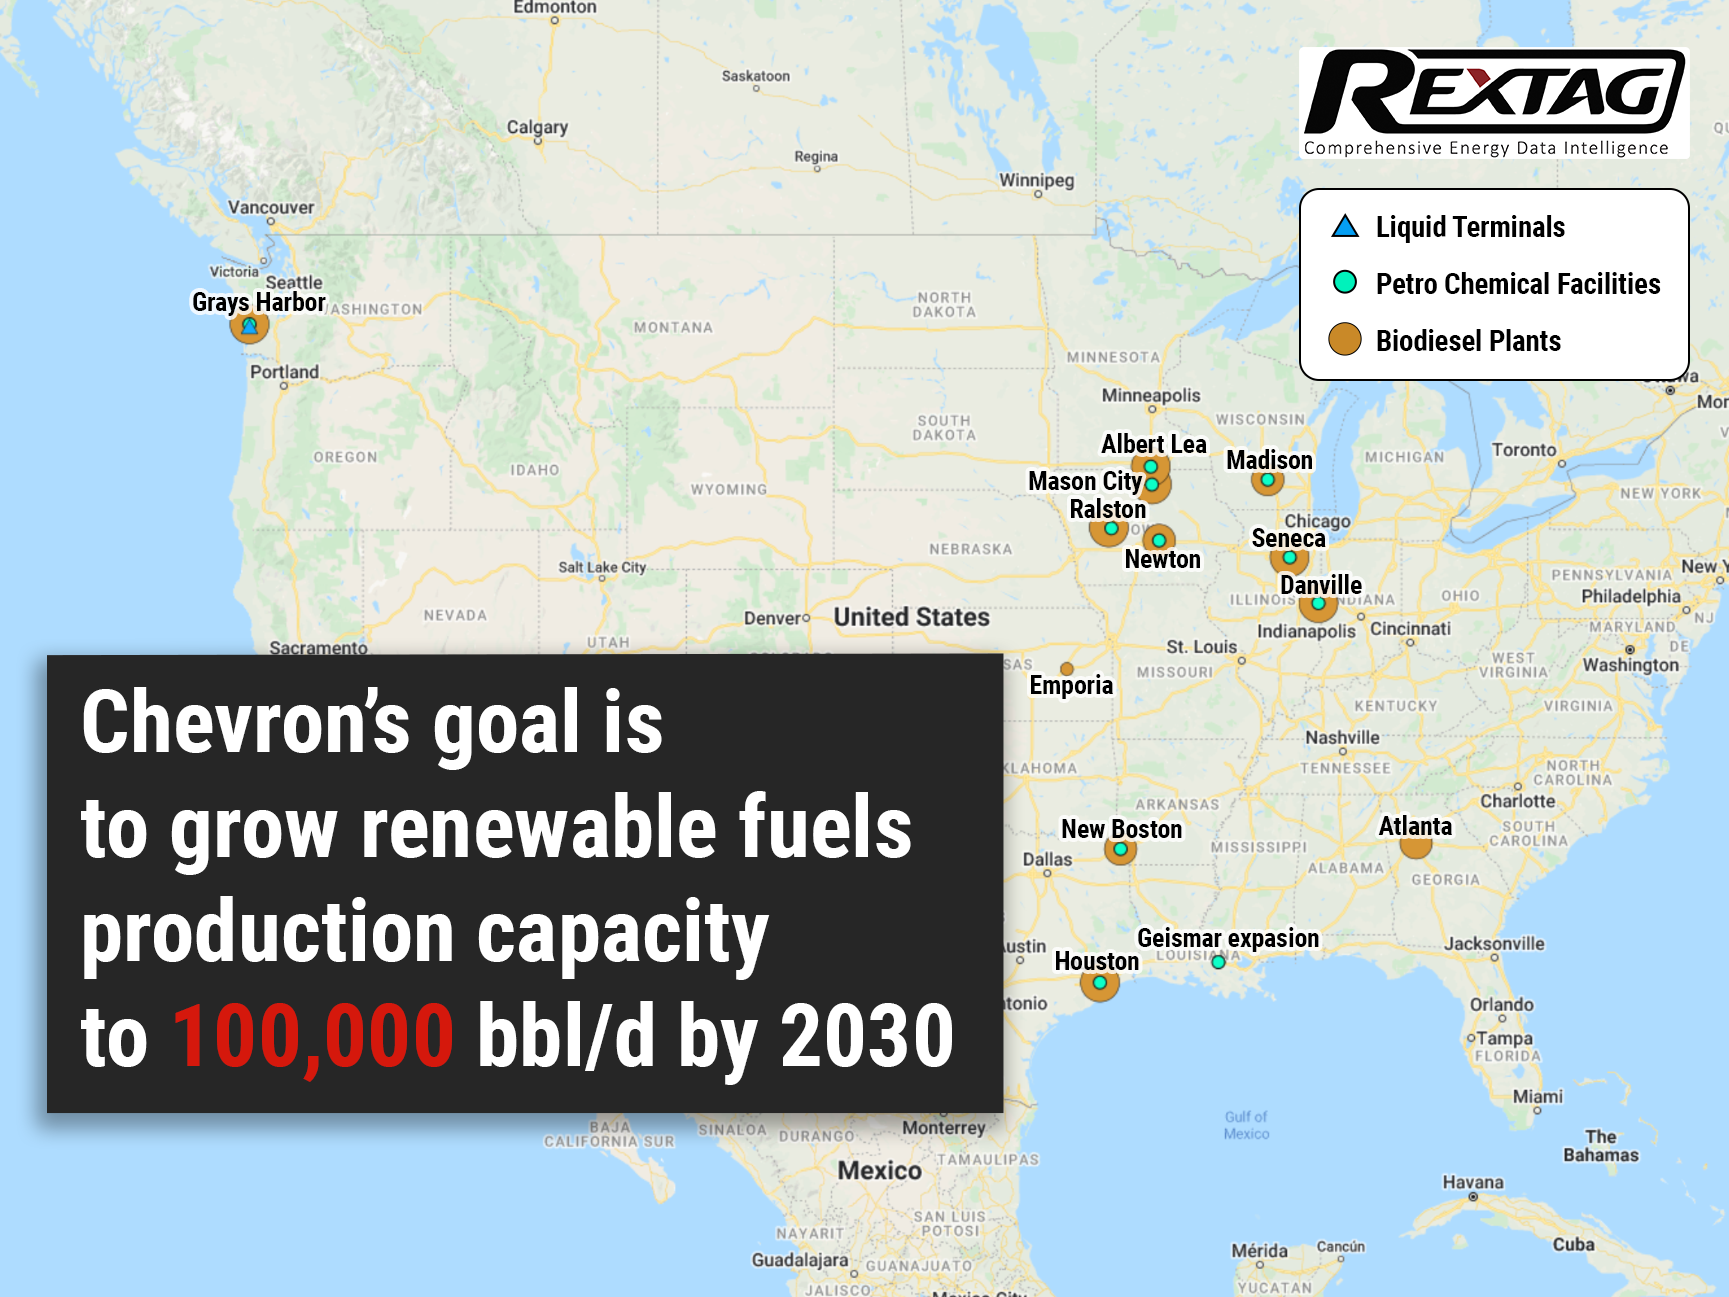 All-in-Chevron-Invests-$3-Billion-in-Alternative-Fuels